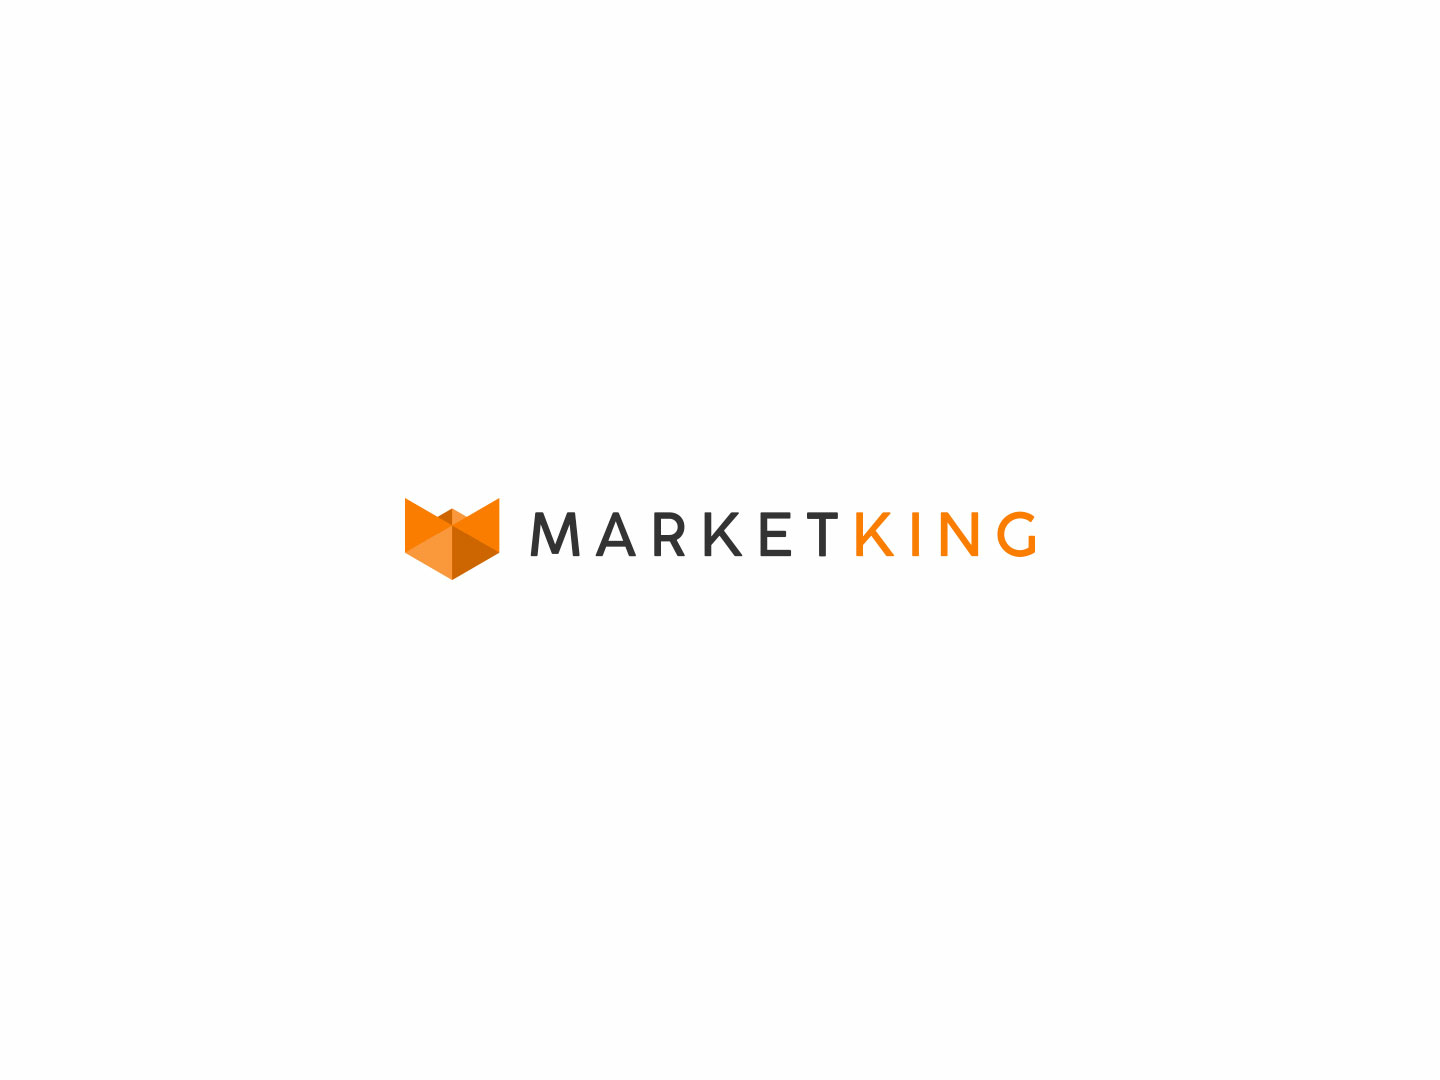 Emblem of Marketing Agency Online Logo Template - VistaCreate